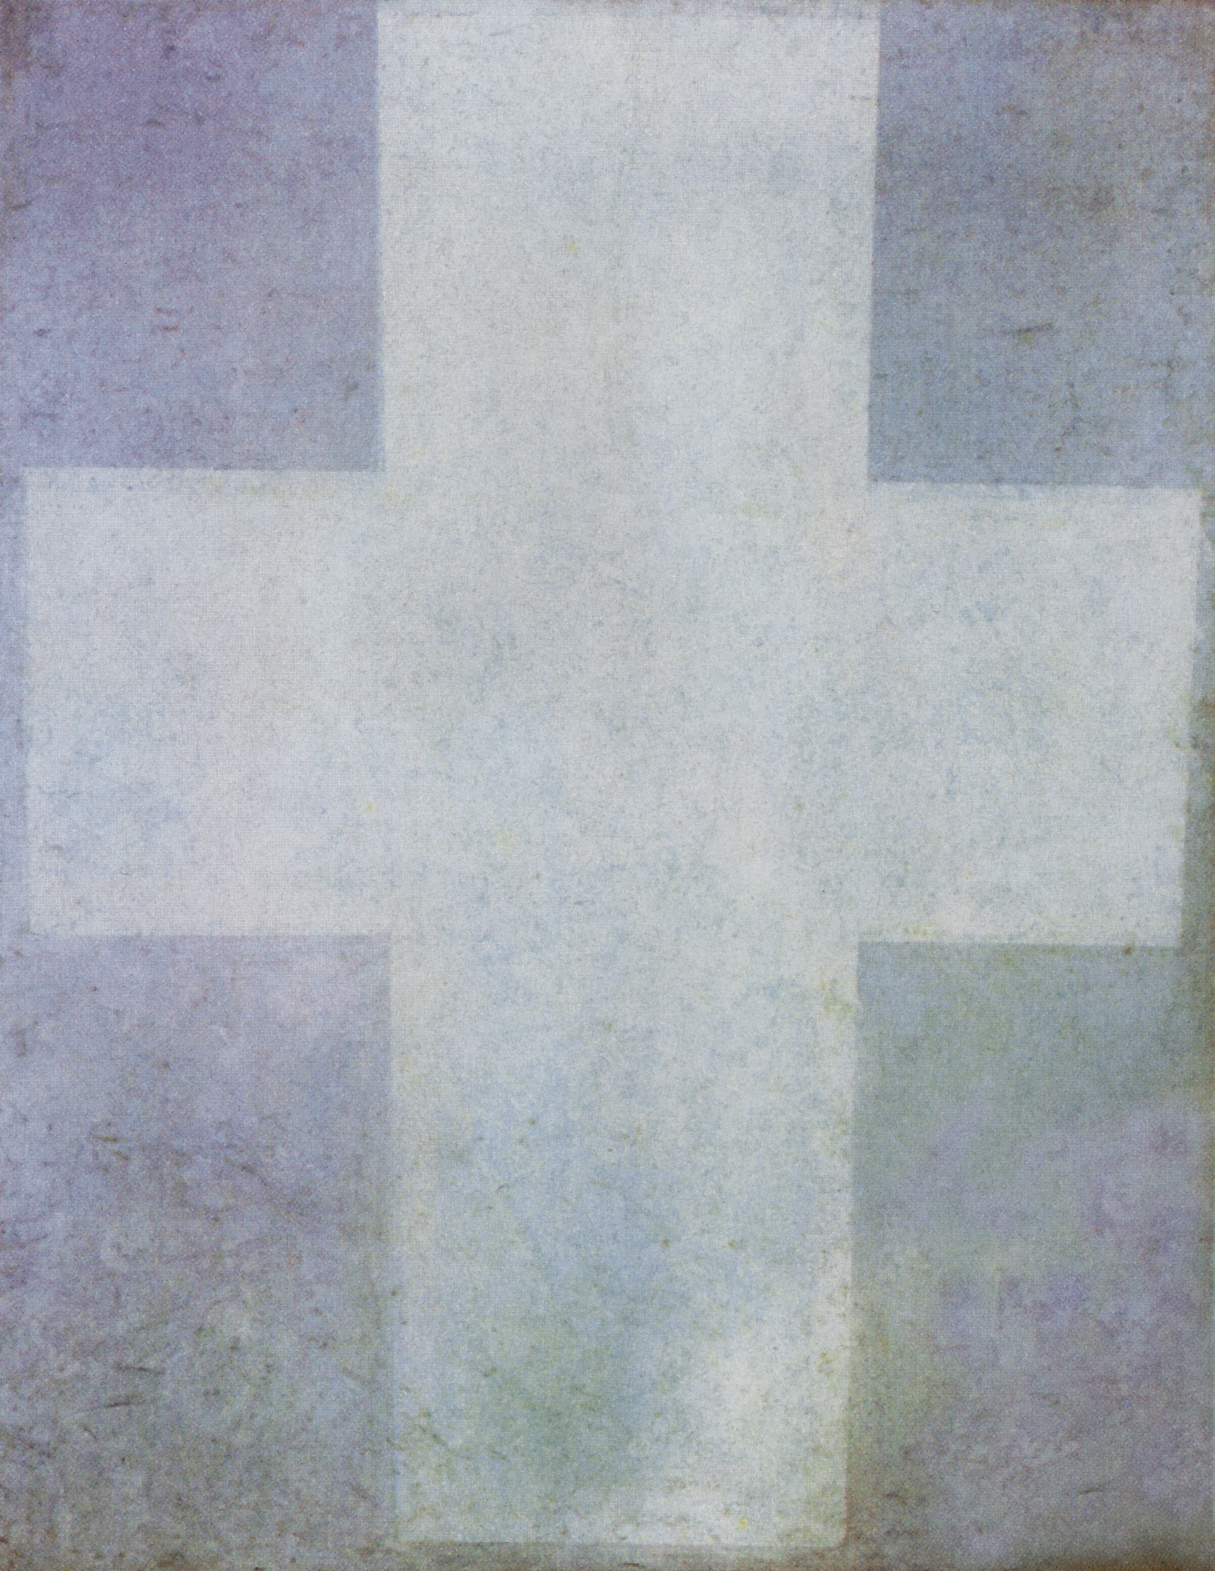 Малевич. Супрематизм (Белый крест). Около 1927